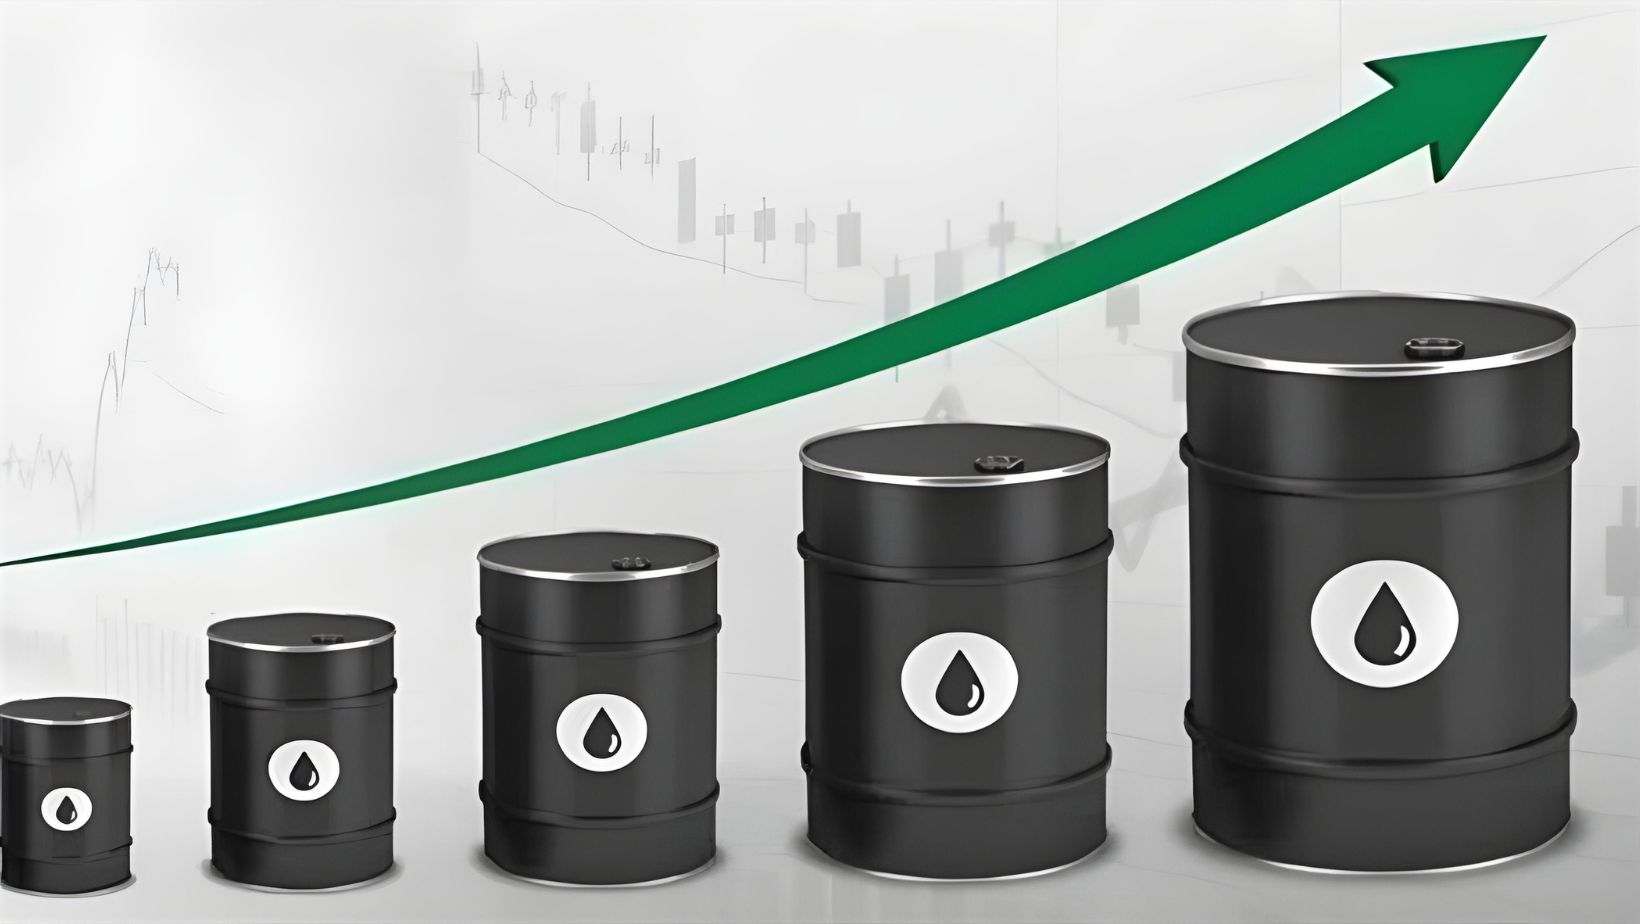 توقعات بصعود في أسعار النفط نتيجة لزيادة الطلب الصيني